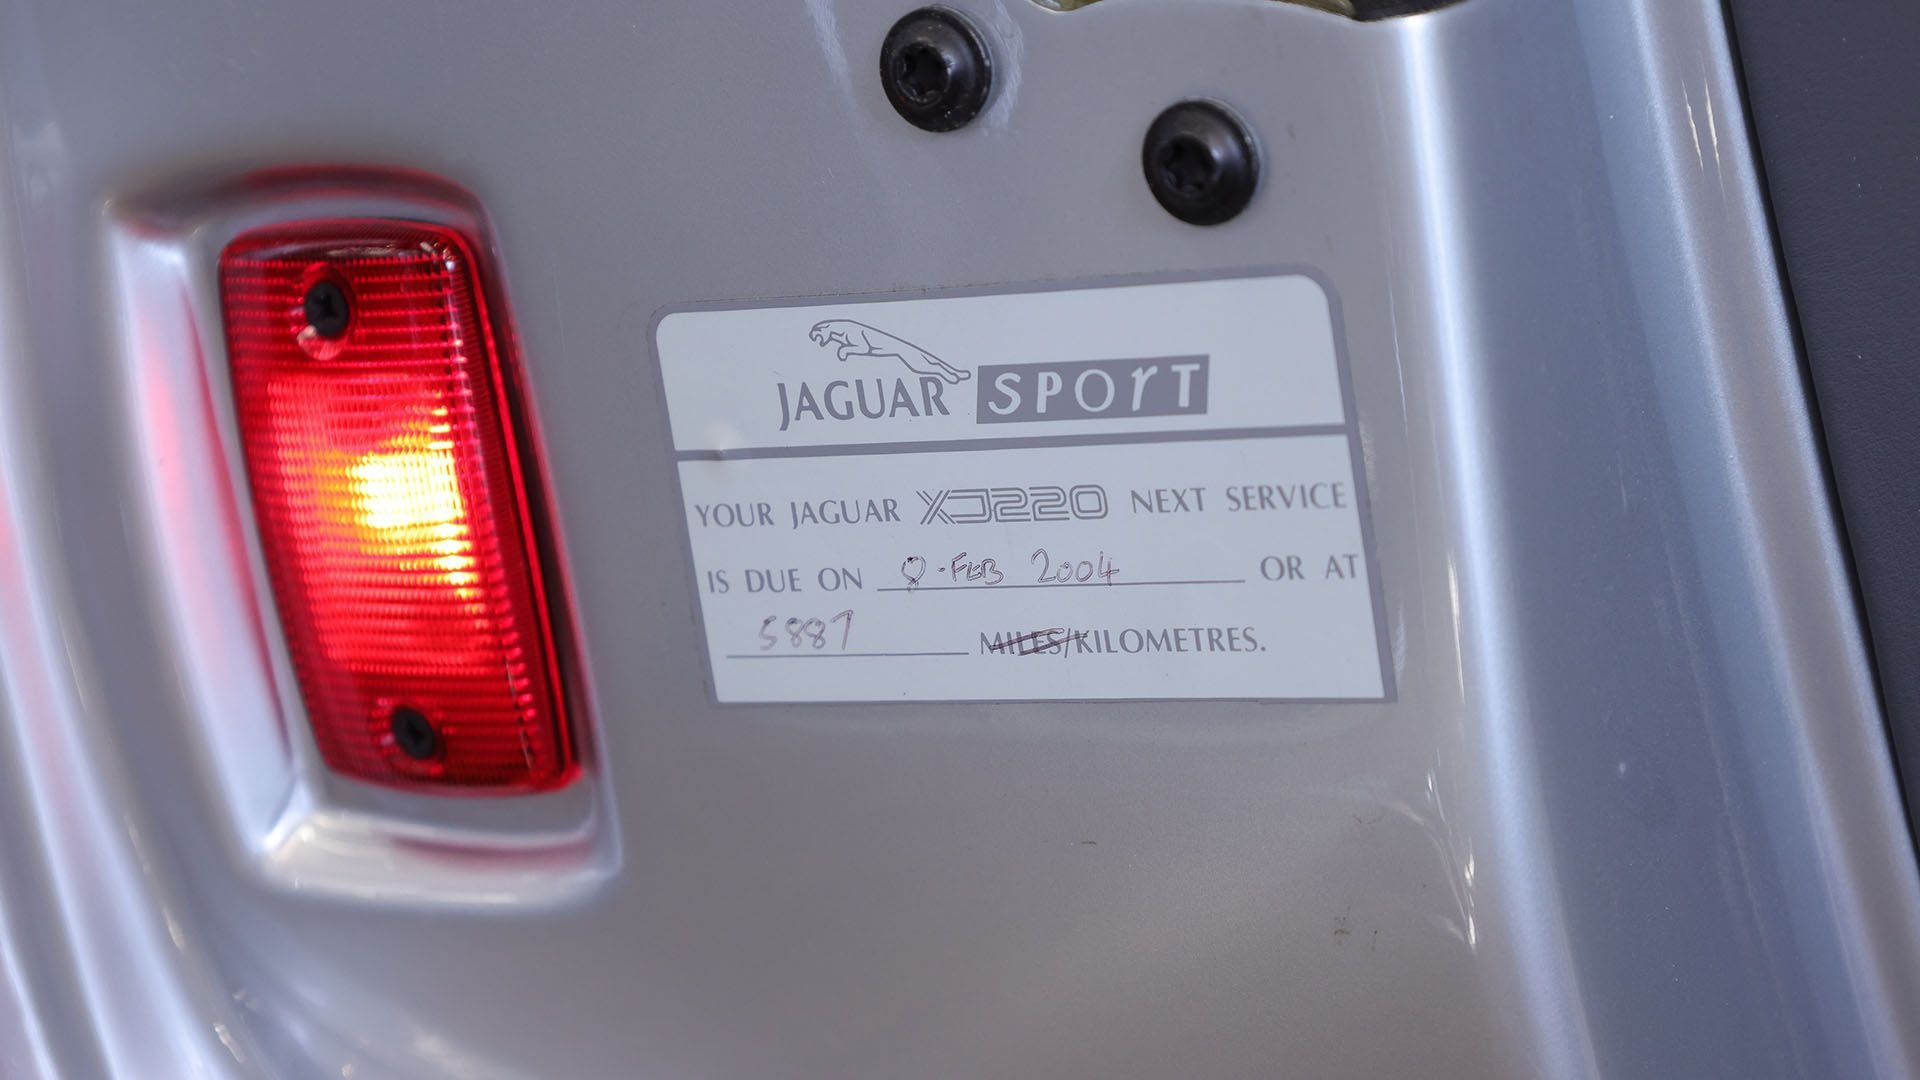 For Sale 1993 Jaguar XJ220